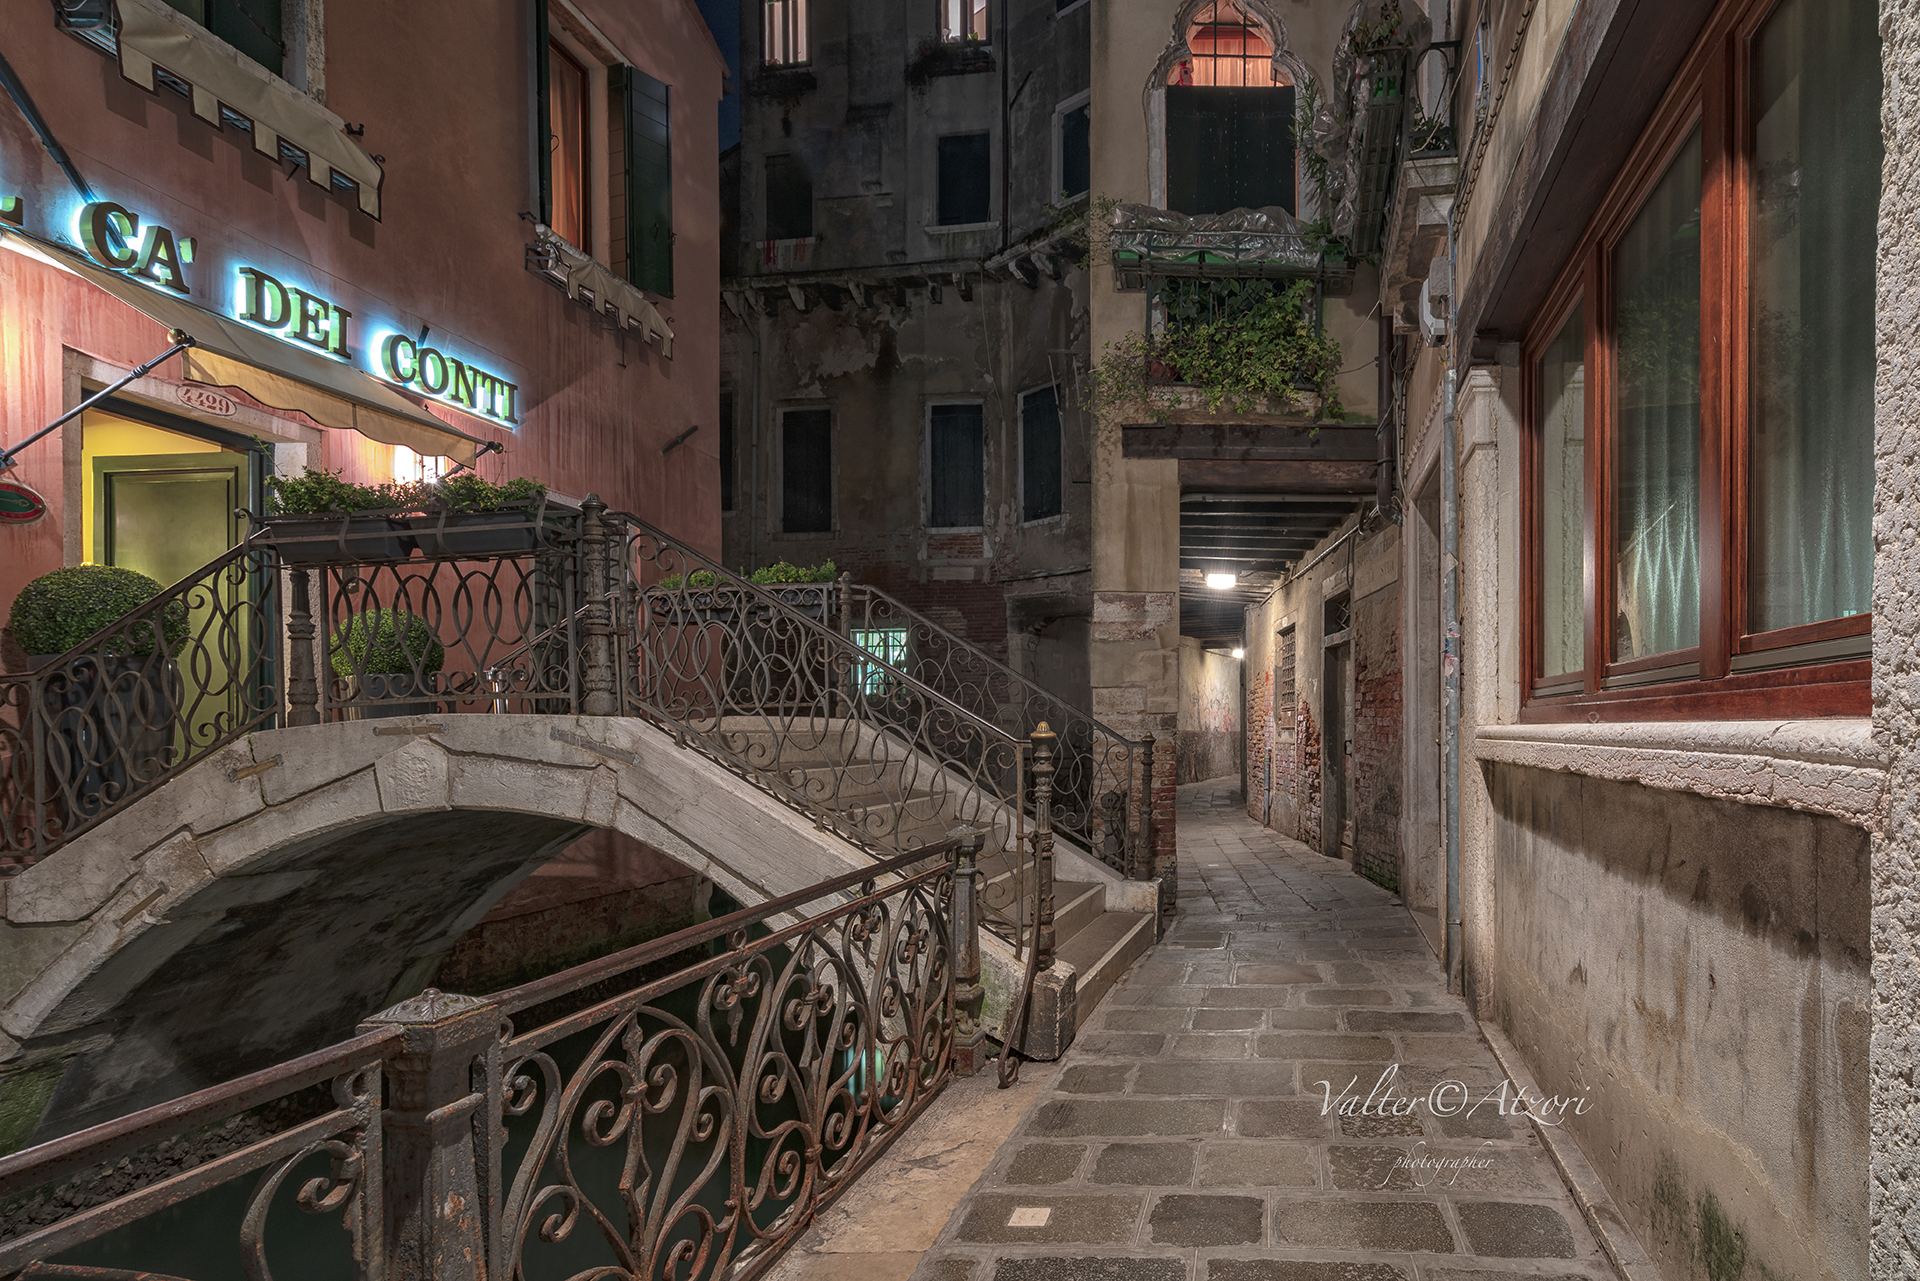 Night-Glimpses in Venice...